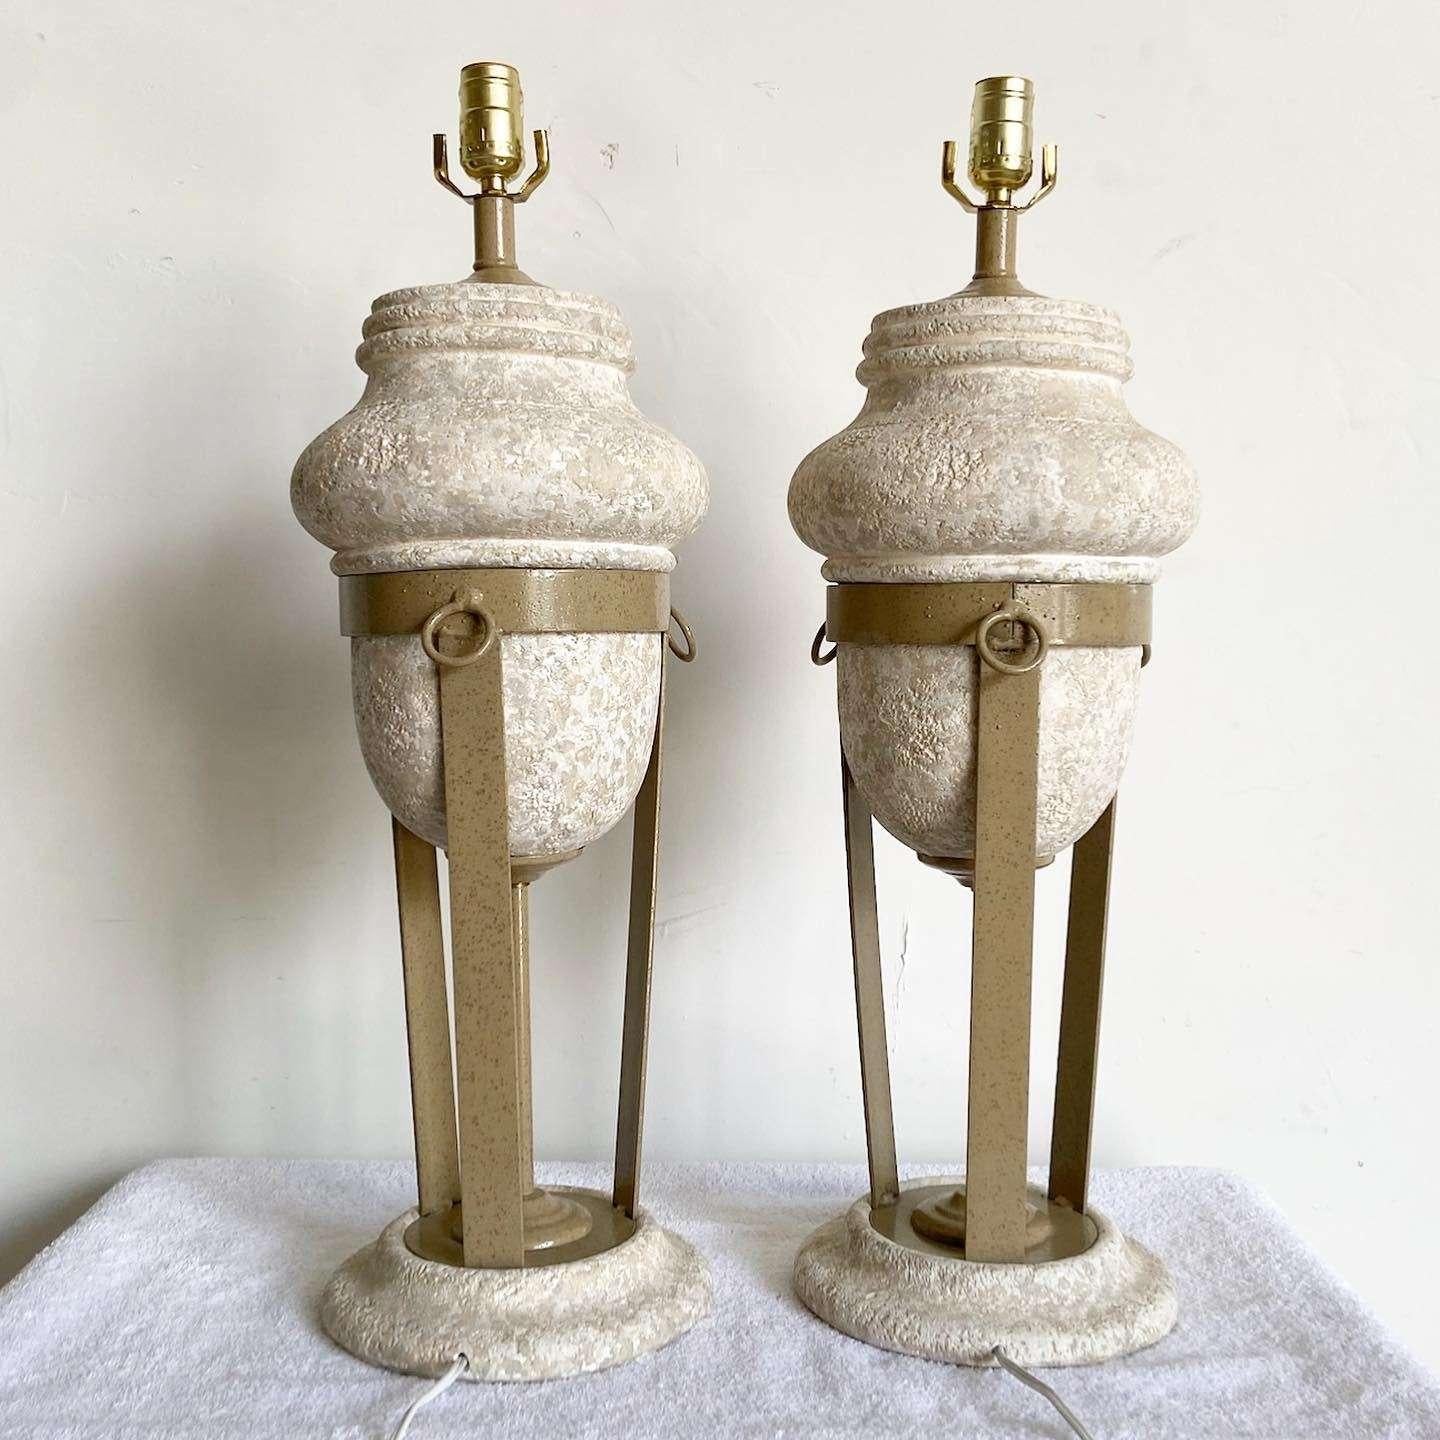 Außergewöhnliches Paar postmoderner Tischlampen aus Keramik und Metall. Sie zeichnen sich durch eine fast römische Ästhetik aus, bei der ein poröser Putz in einem Metallrahmen ruht. 